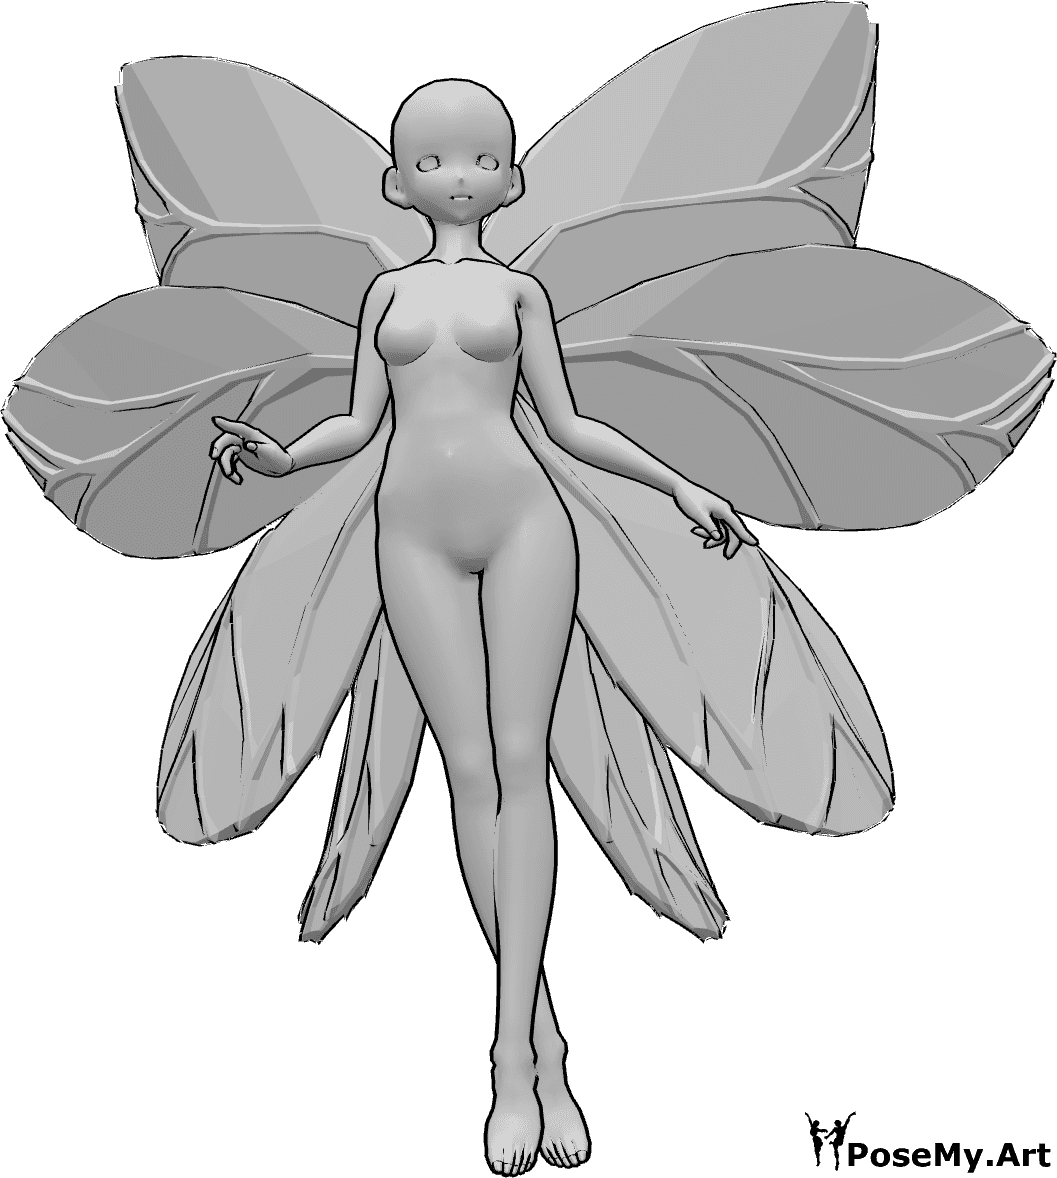 Posen-Referenz- Anime Fee fliegende Pose - Anime Frau mit Feenflügeln fliegt, schaut nach vorne, ihre Beine sind gekreuzt